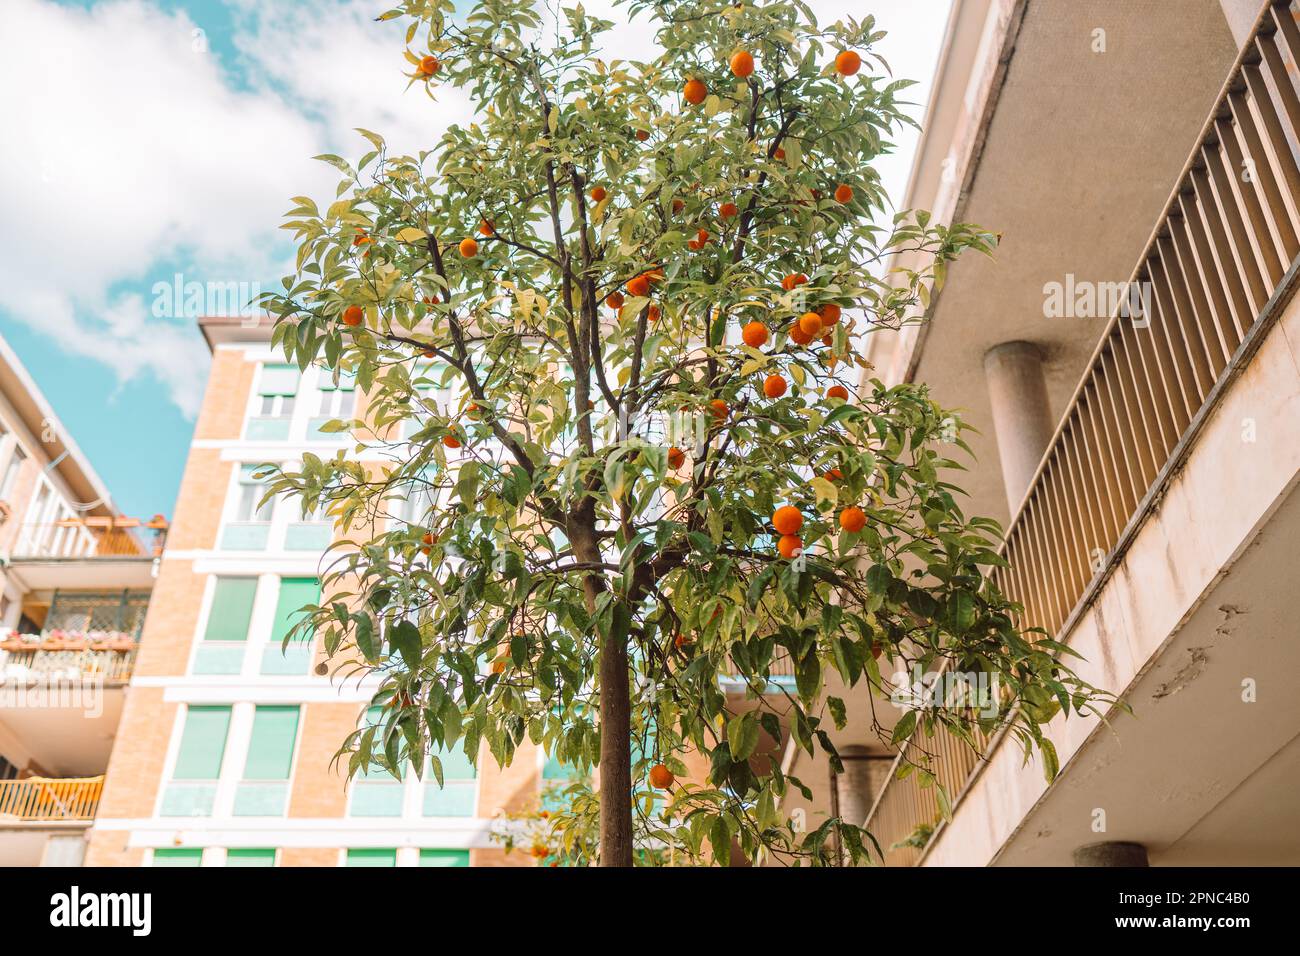 Aranciato nel centro storico di Pisa. Accogliente strada vecchia d'Italia. Le arance crescono su un albero all'esterno. Foto di alta qualità Foto Stock